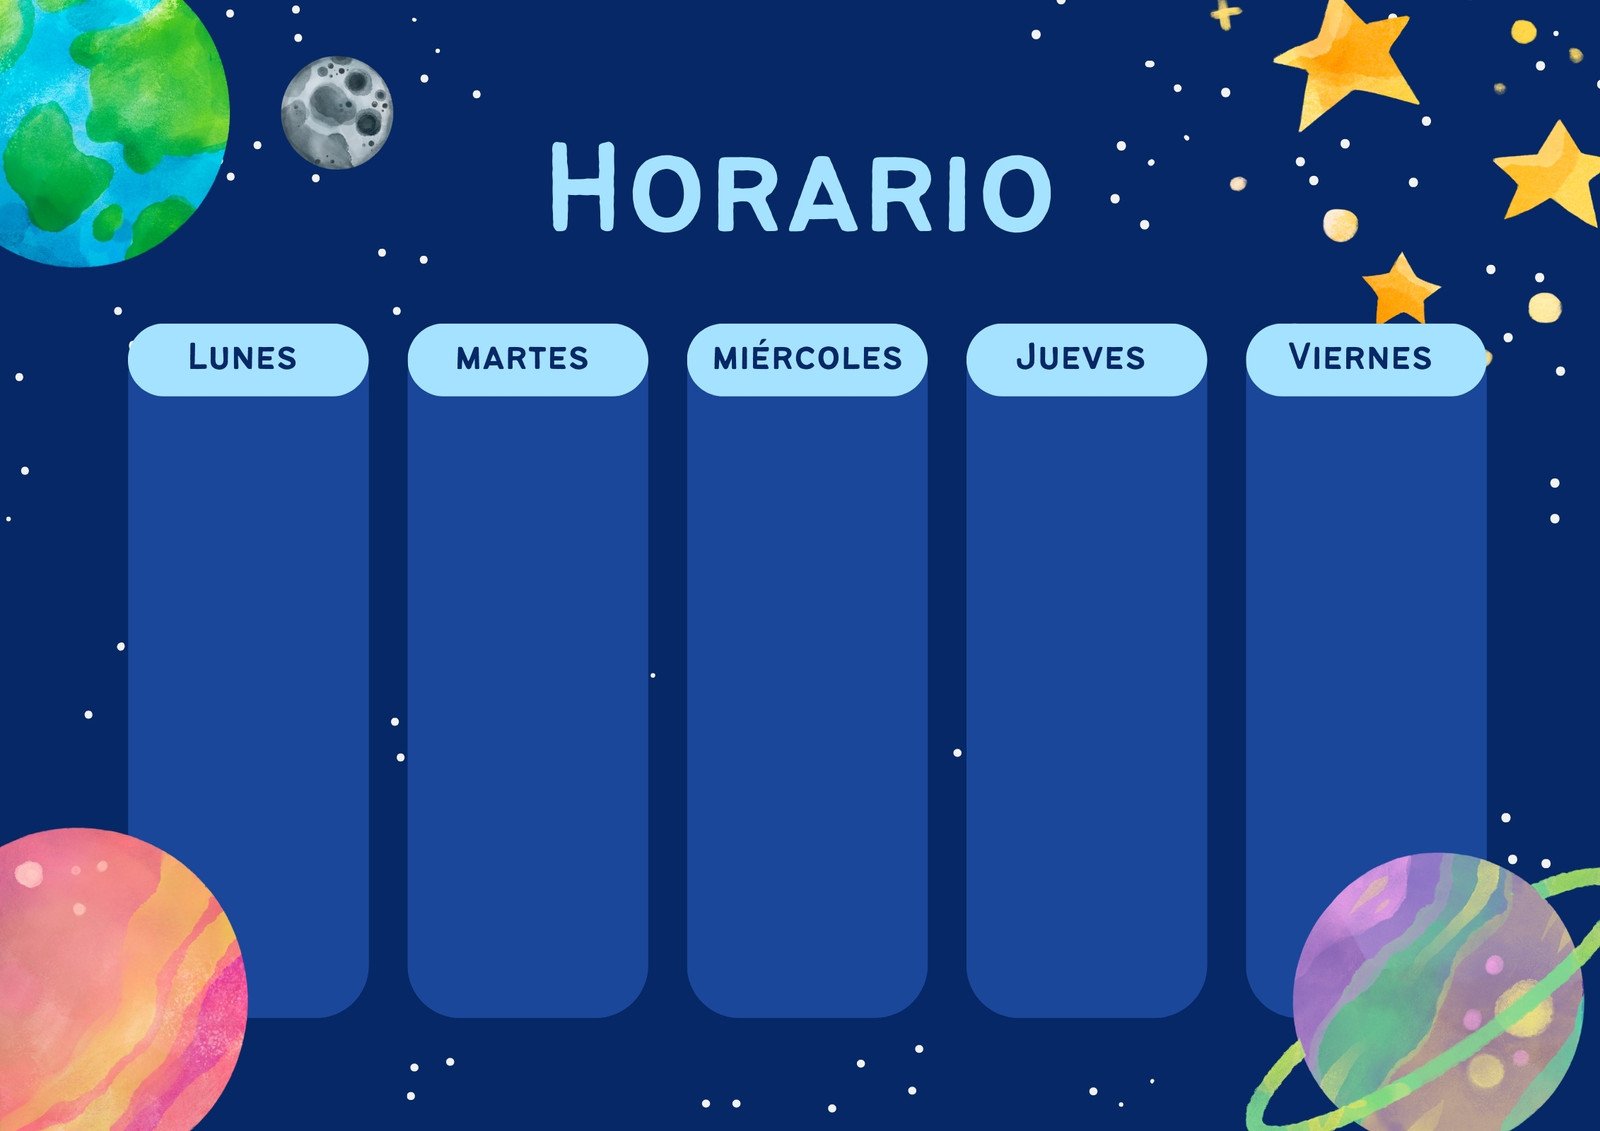 Horario planetas ilustrado azul